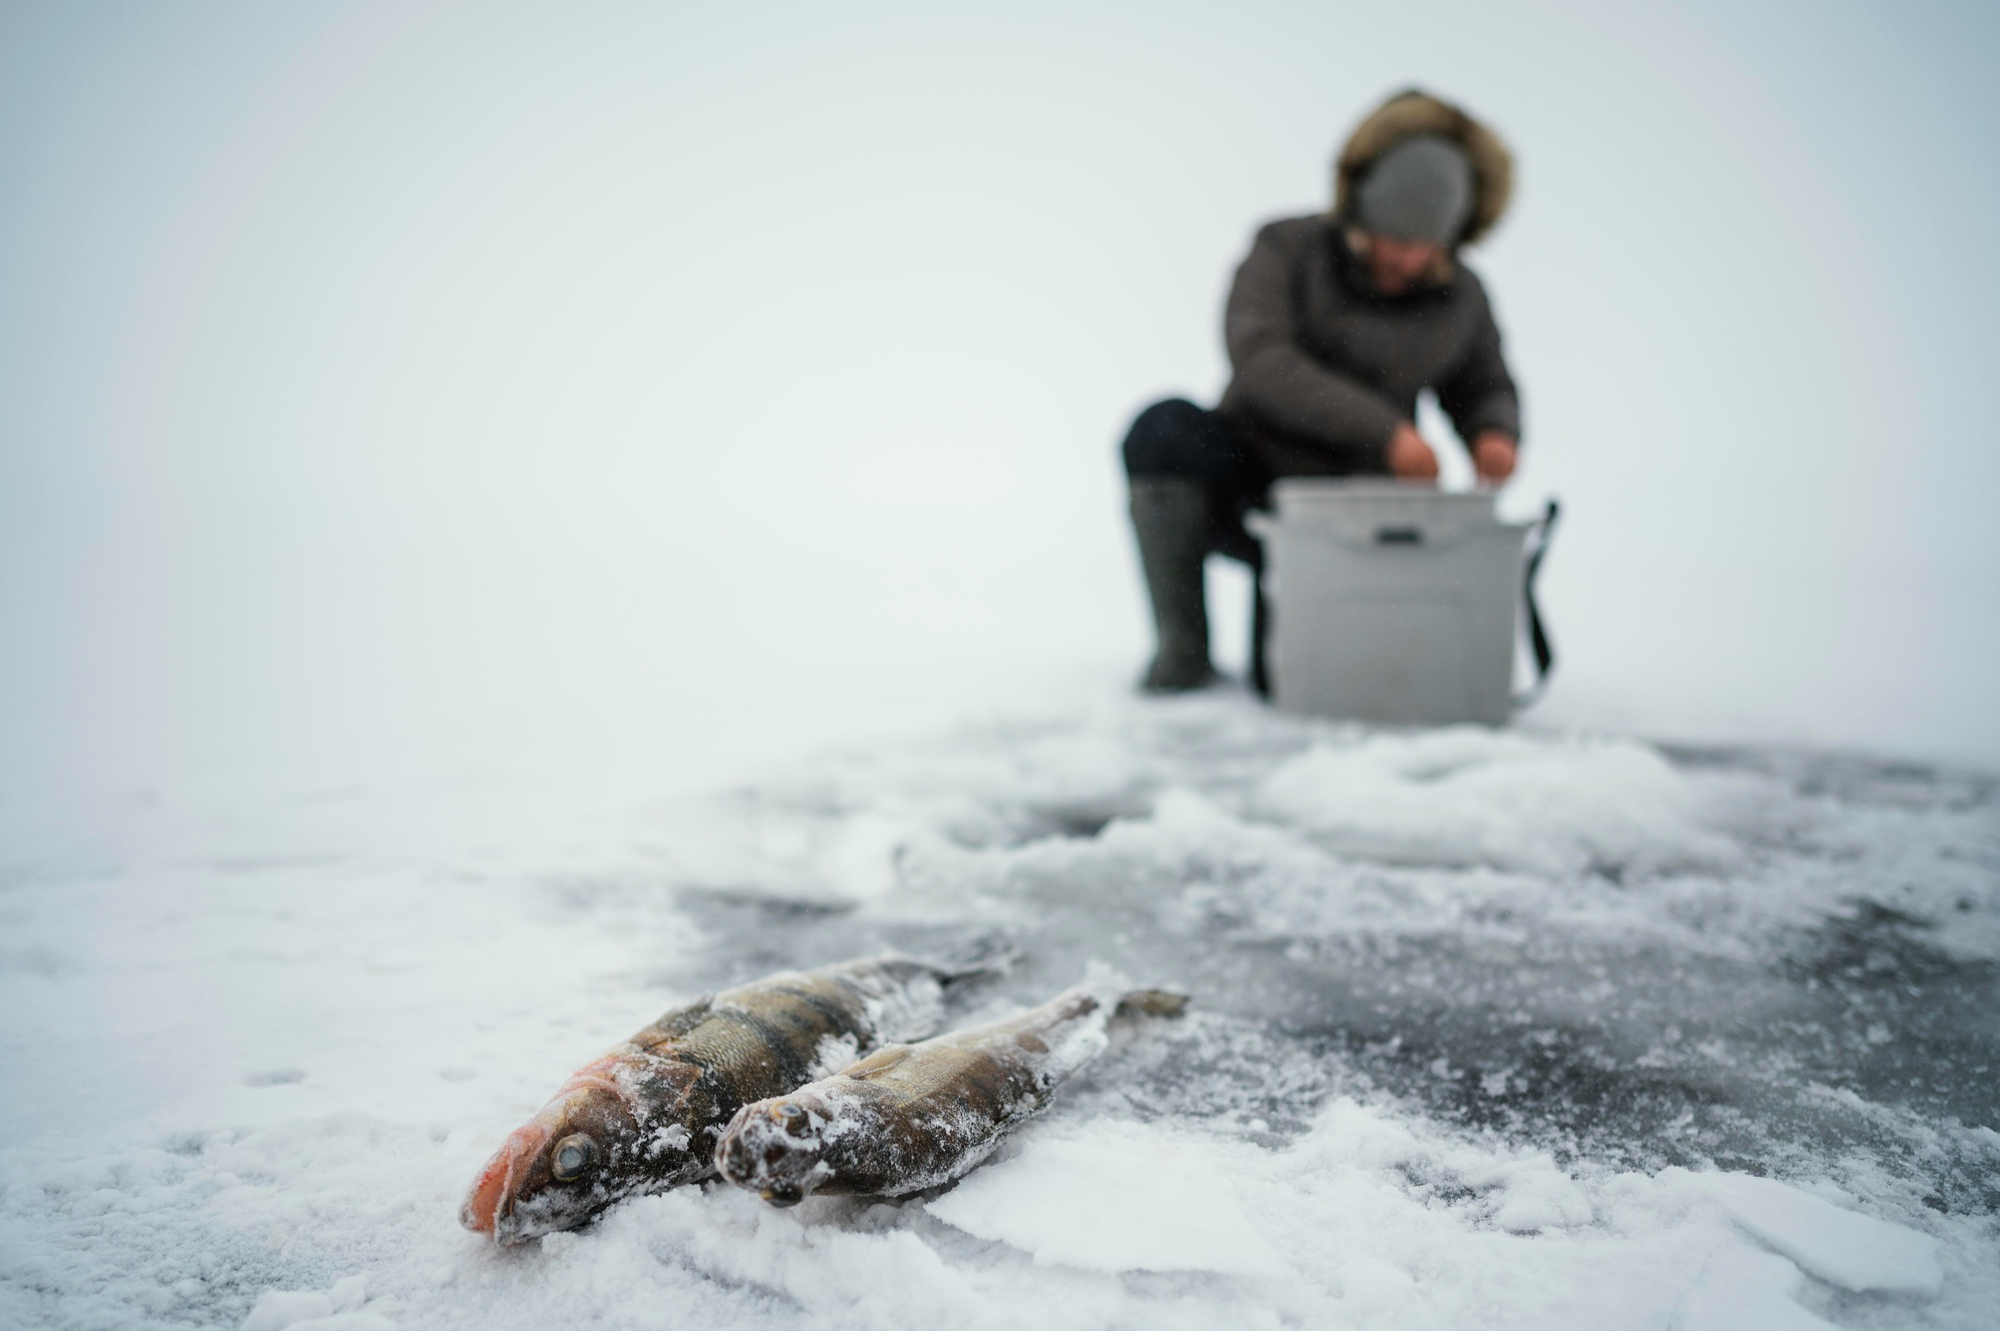 Frozen удочка. Подледная рыбалка на Байкале. Рыбачить. Рыбаки на льдине.